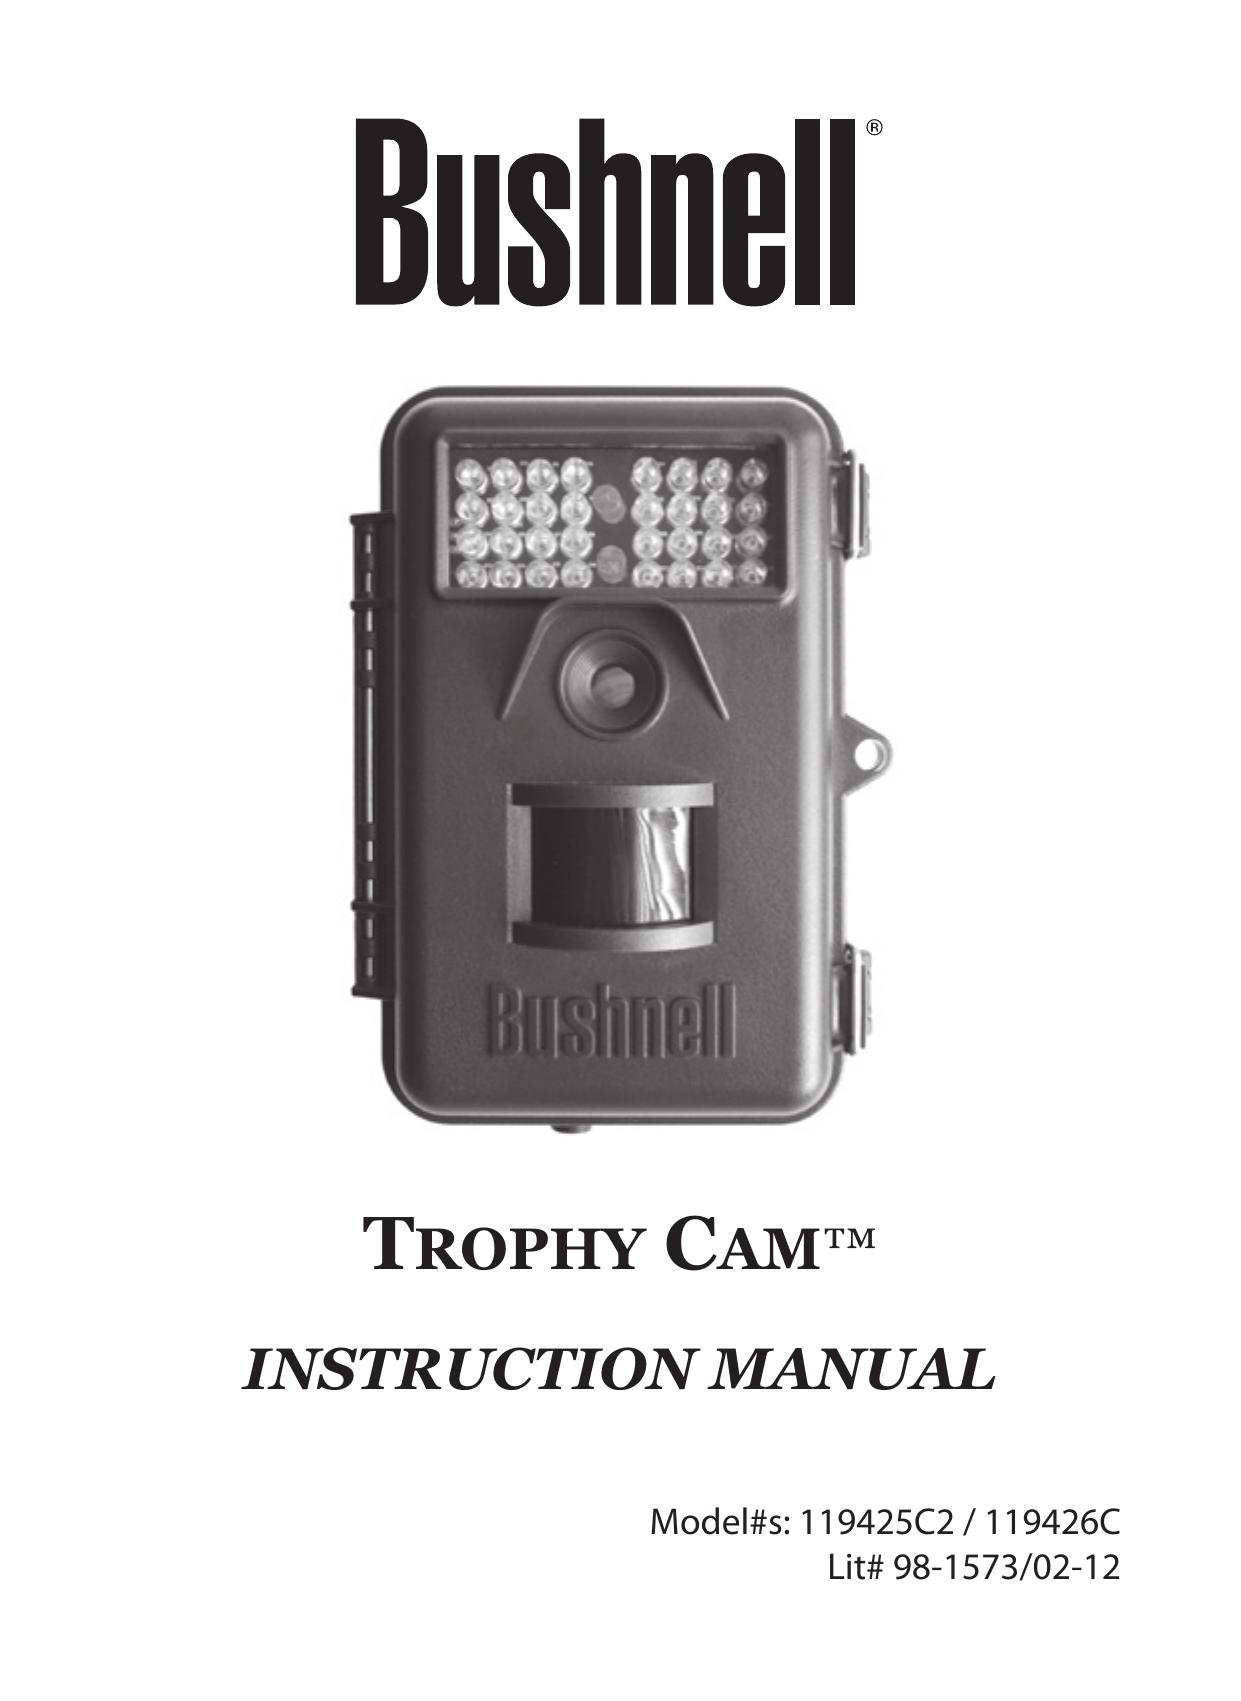 Bushnell 119426C Camcorder User Manual